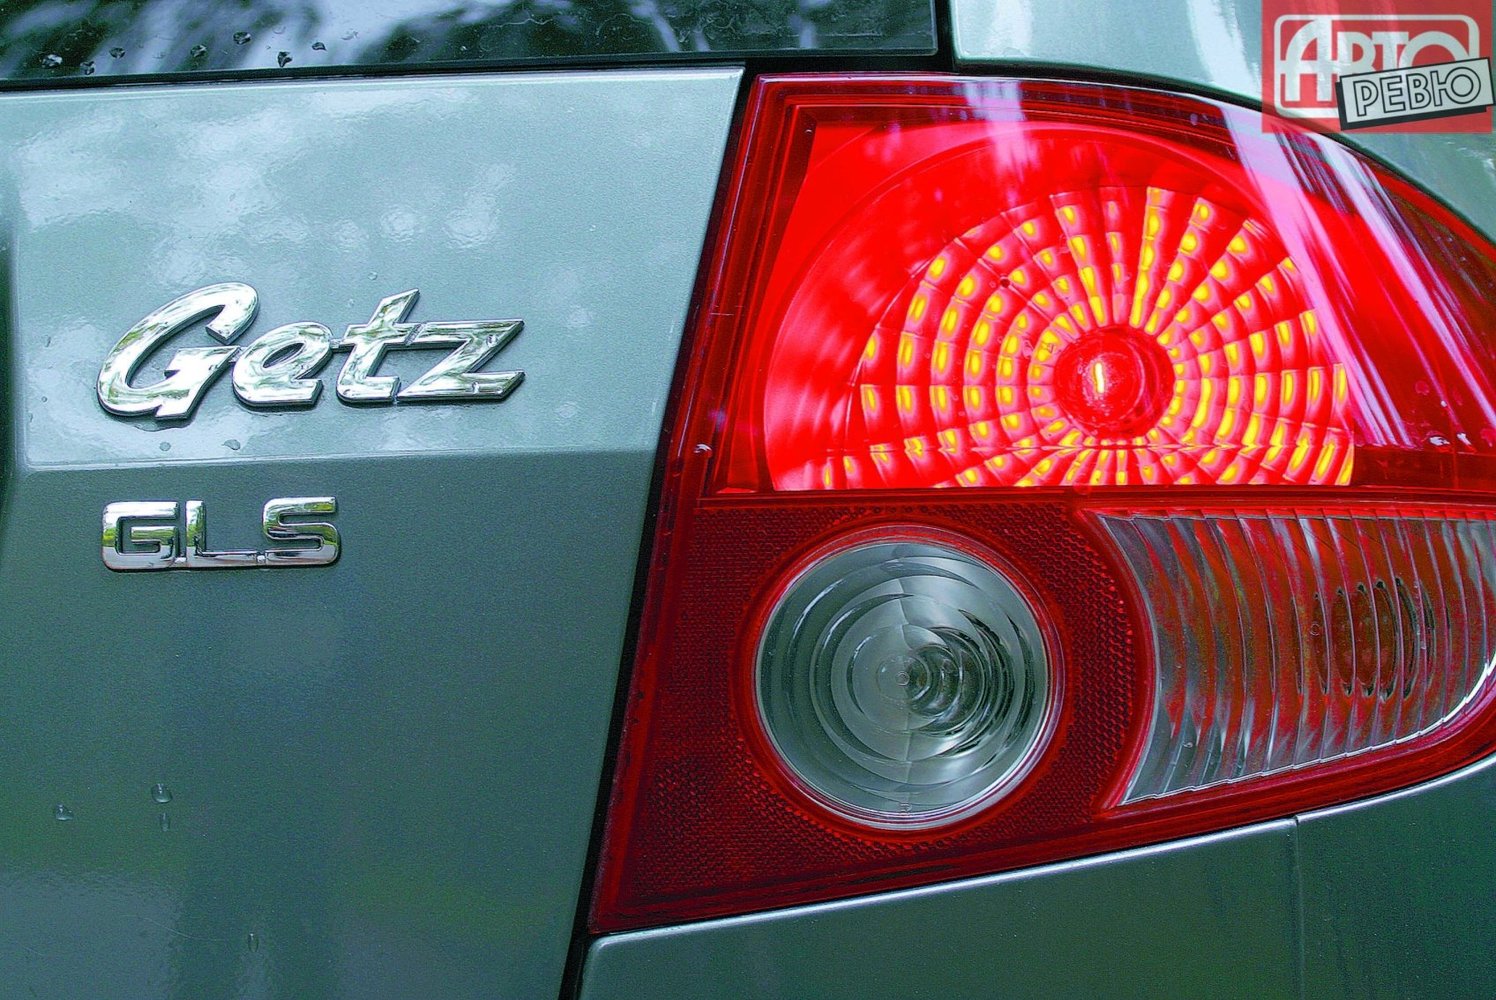 хэтчбек 5 дв. Hyundai Getz 2002 - 2005г выпуска модификация 1.1 MT (62 л.с.)